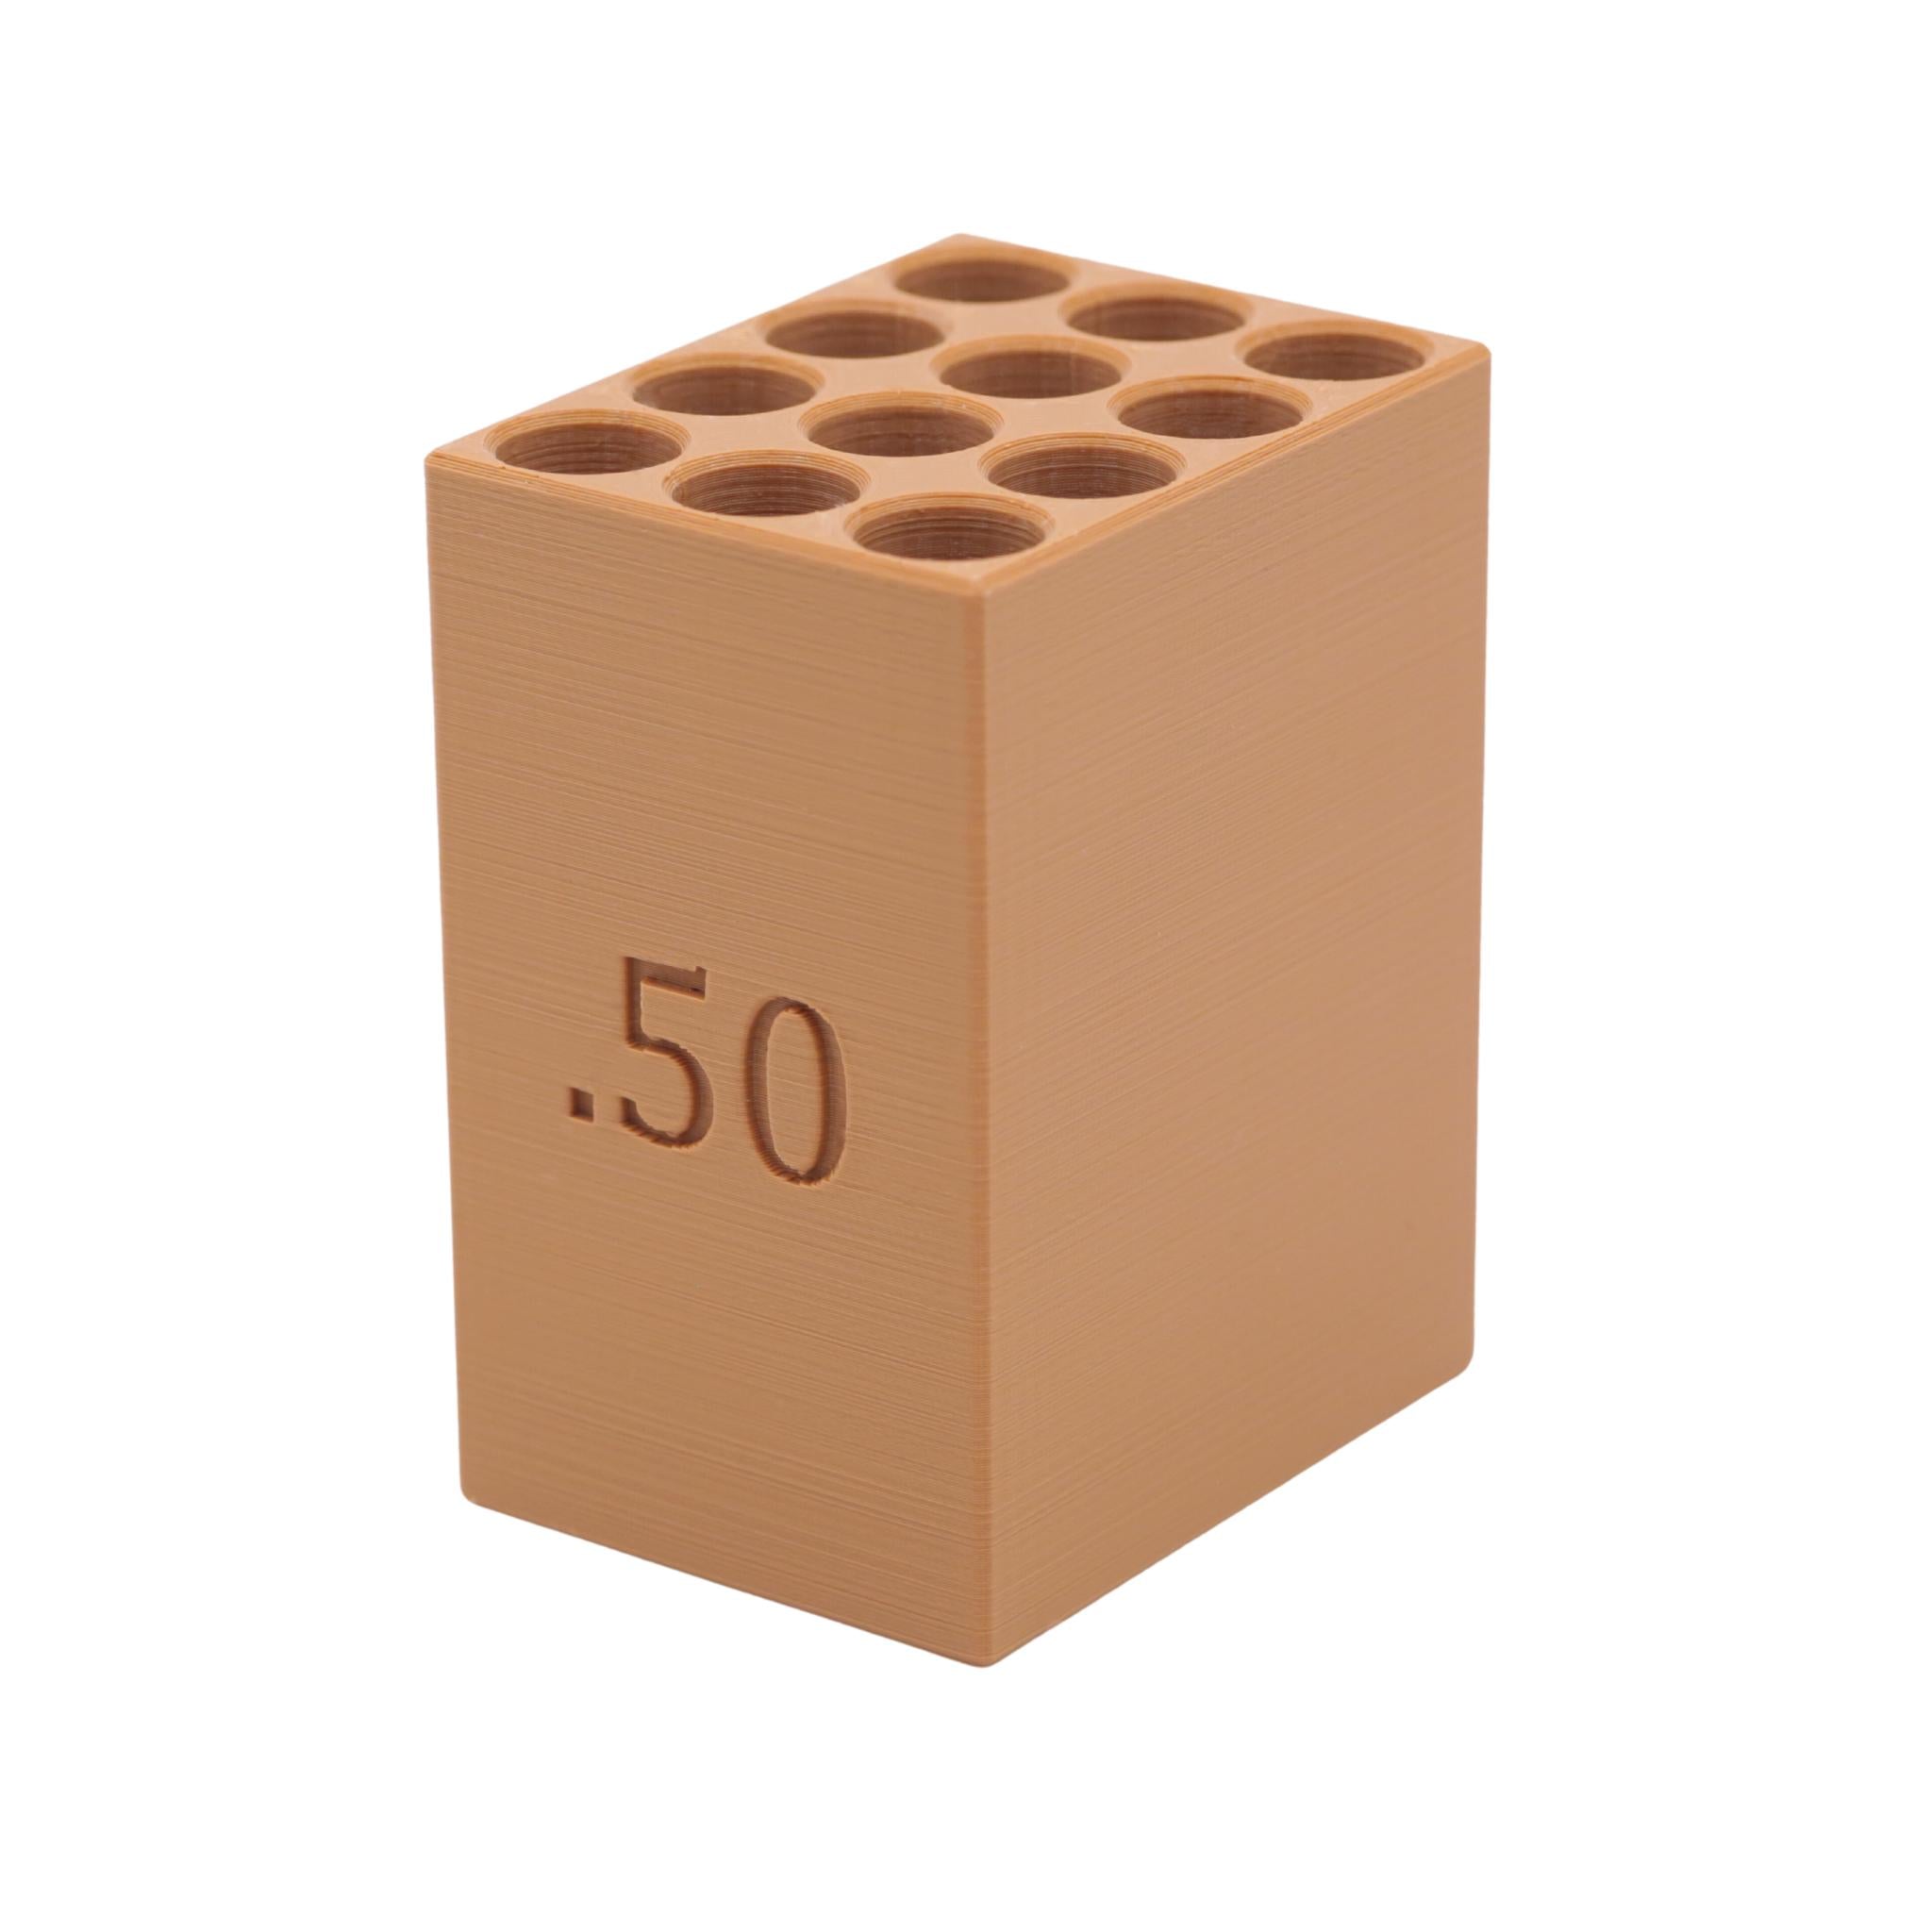 50 cal. Paper Cartridge Loading Block